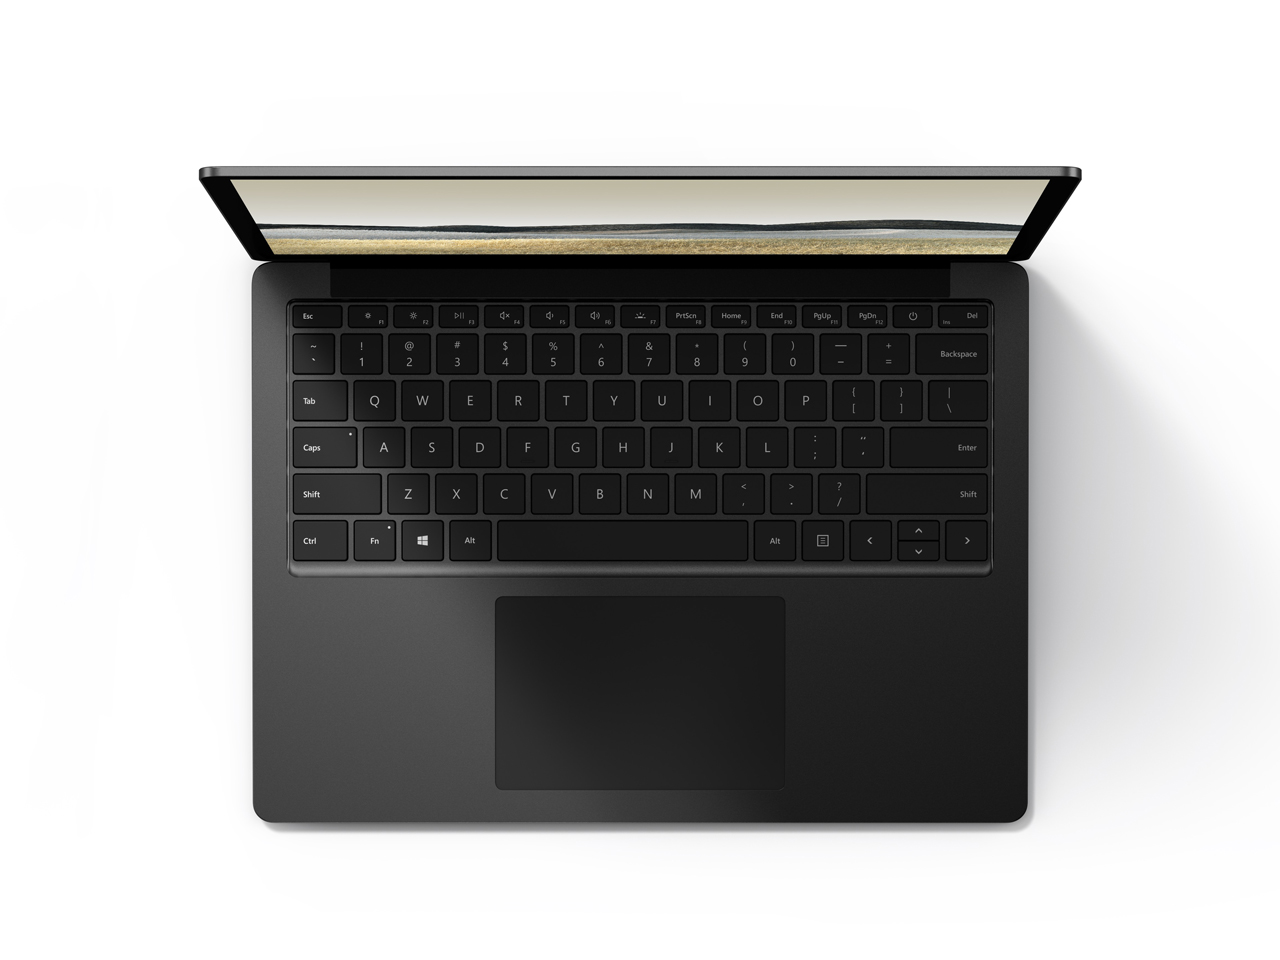 価格.com - 『本体 上面』 Surface Laptop 3 13.5インチ V4C-00039 [ブラック] の製品画像